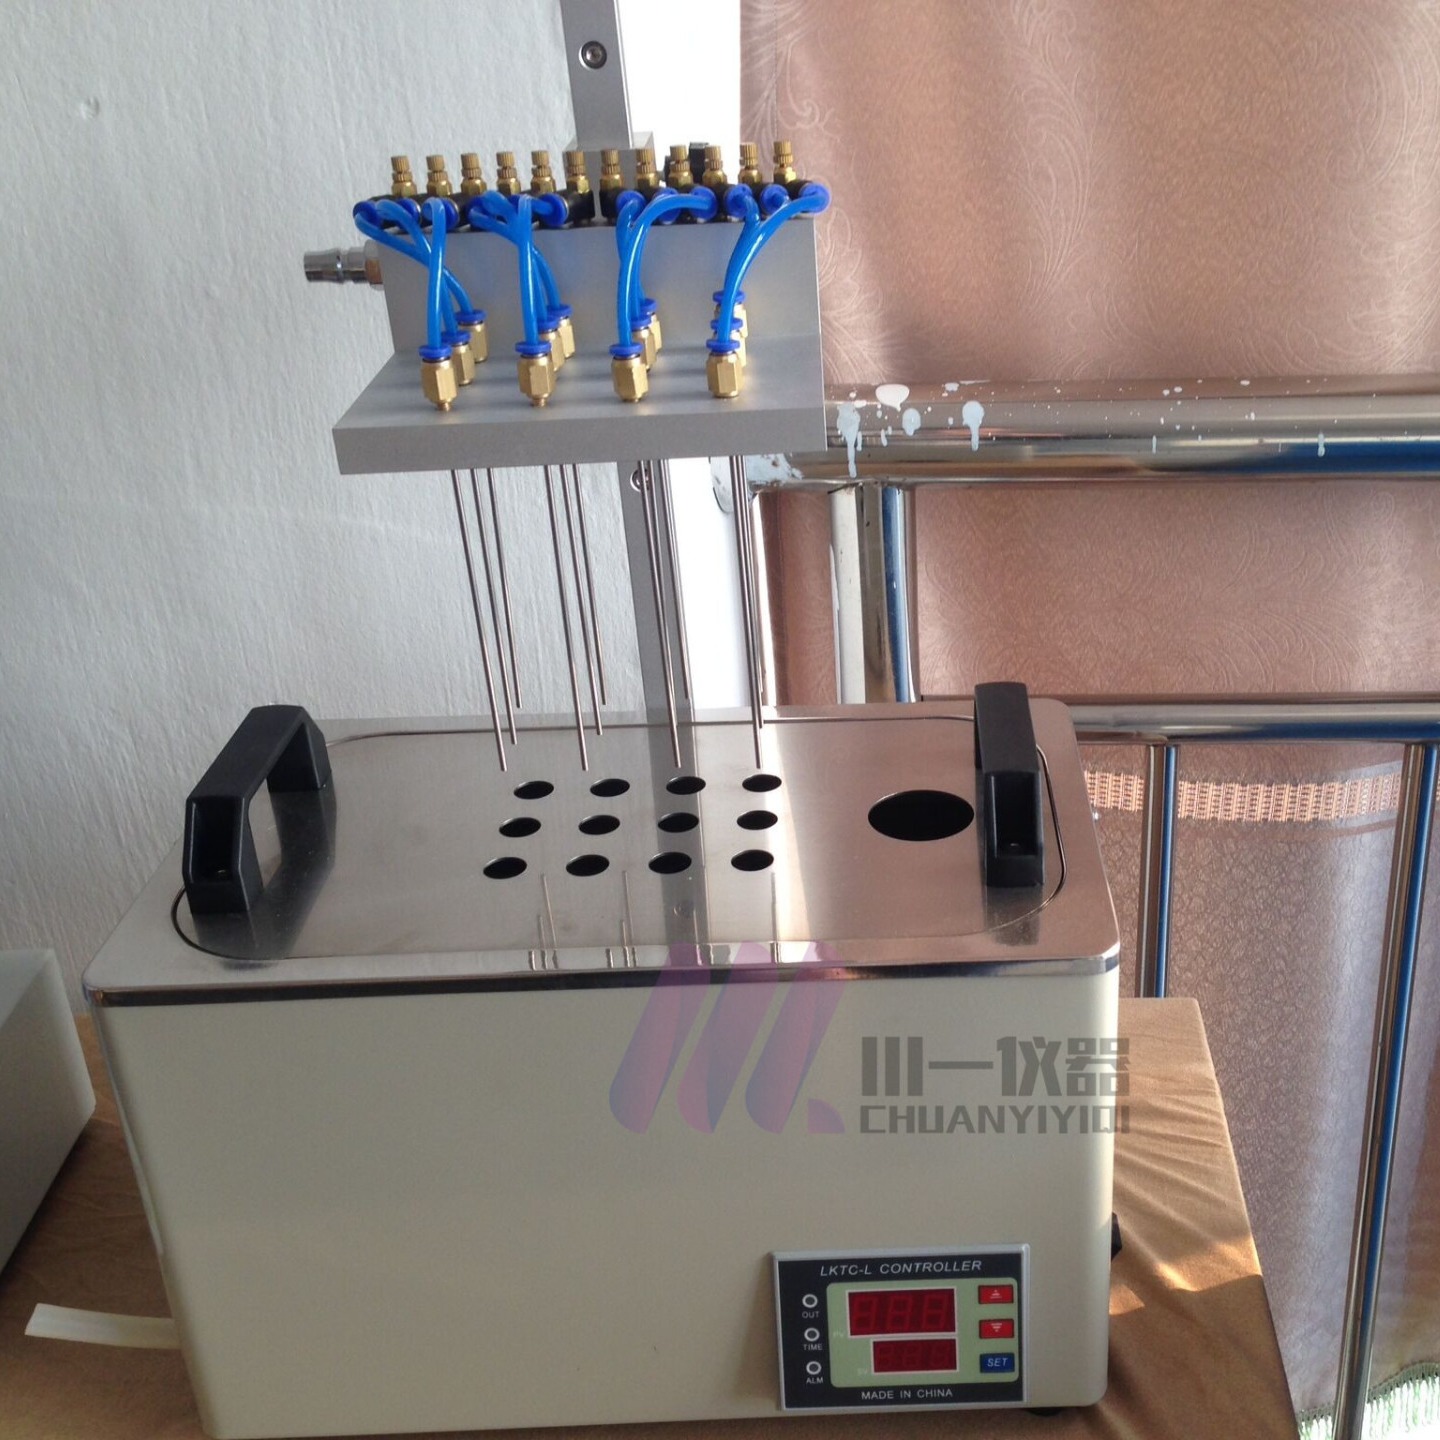 重庆不锈钢水浴氮吹仪CY-DCY-24SL数字温控器 无氧浓缩川一实验